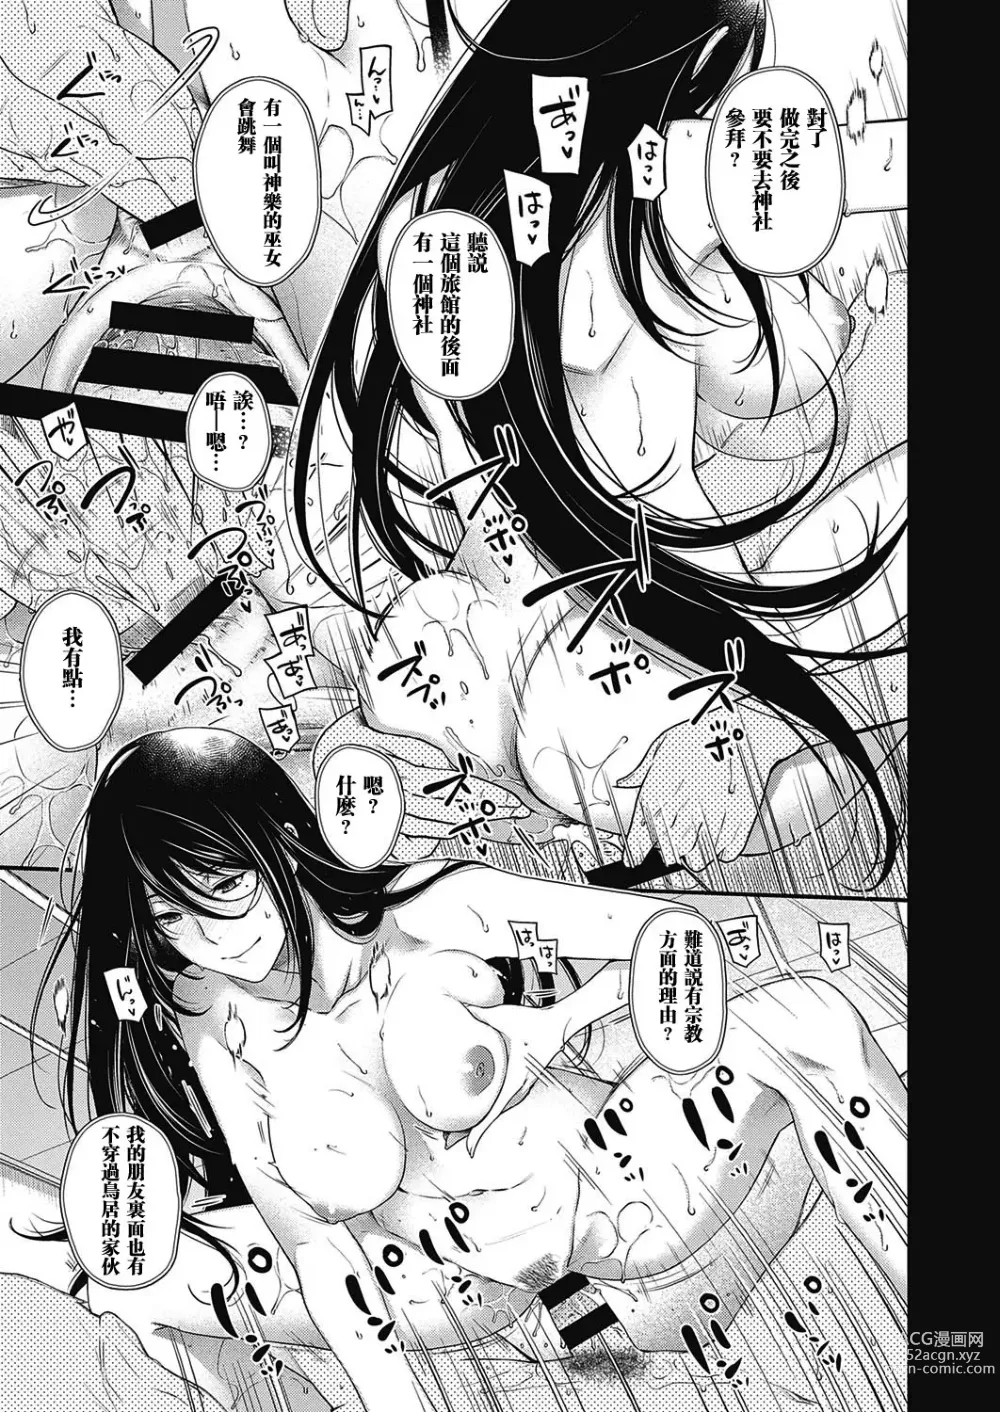 Page 5 of manga Onmyou no Kemono